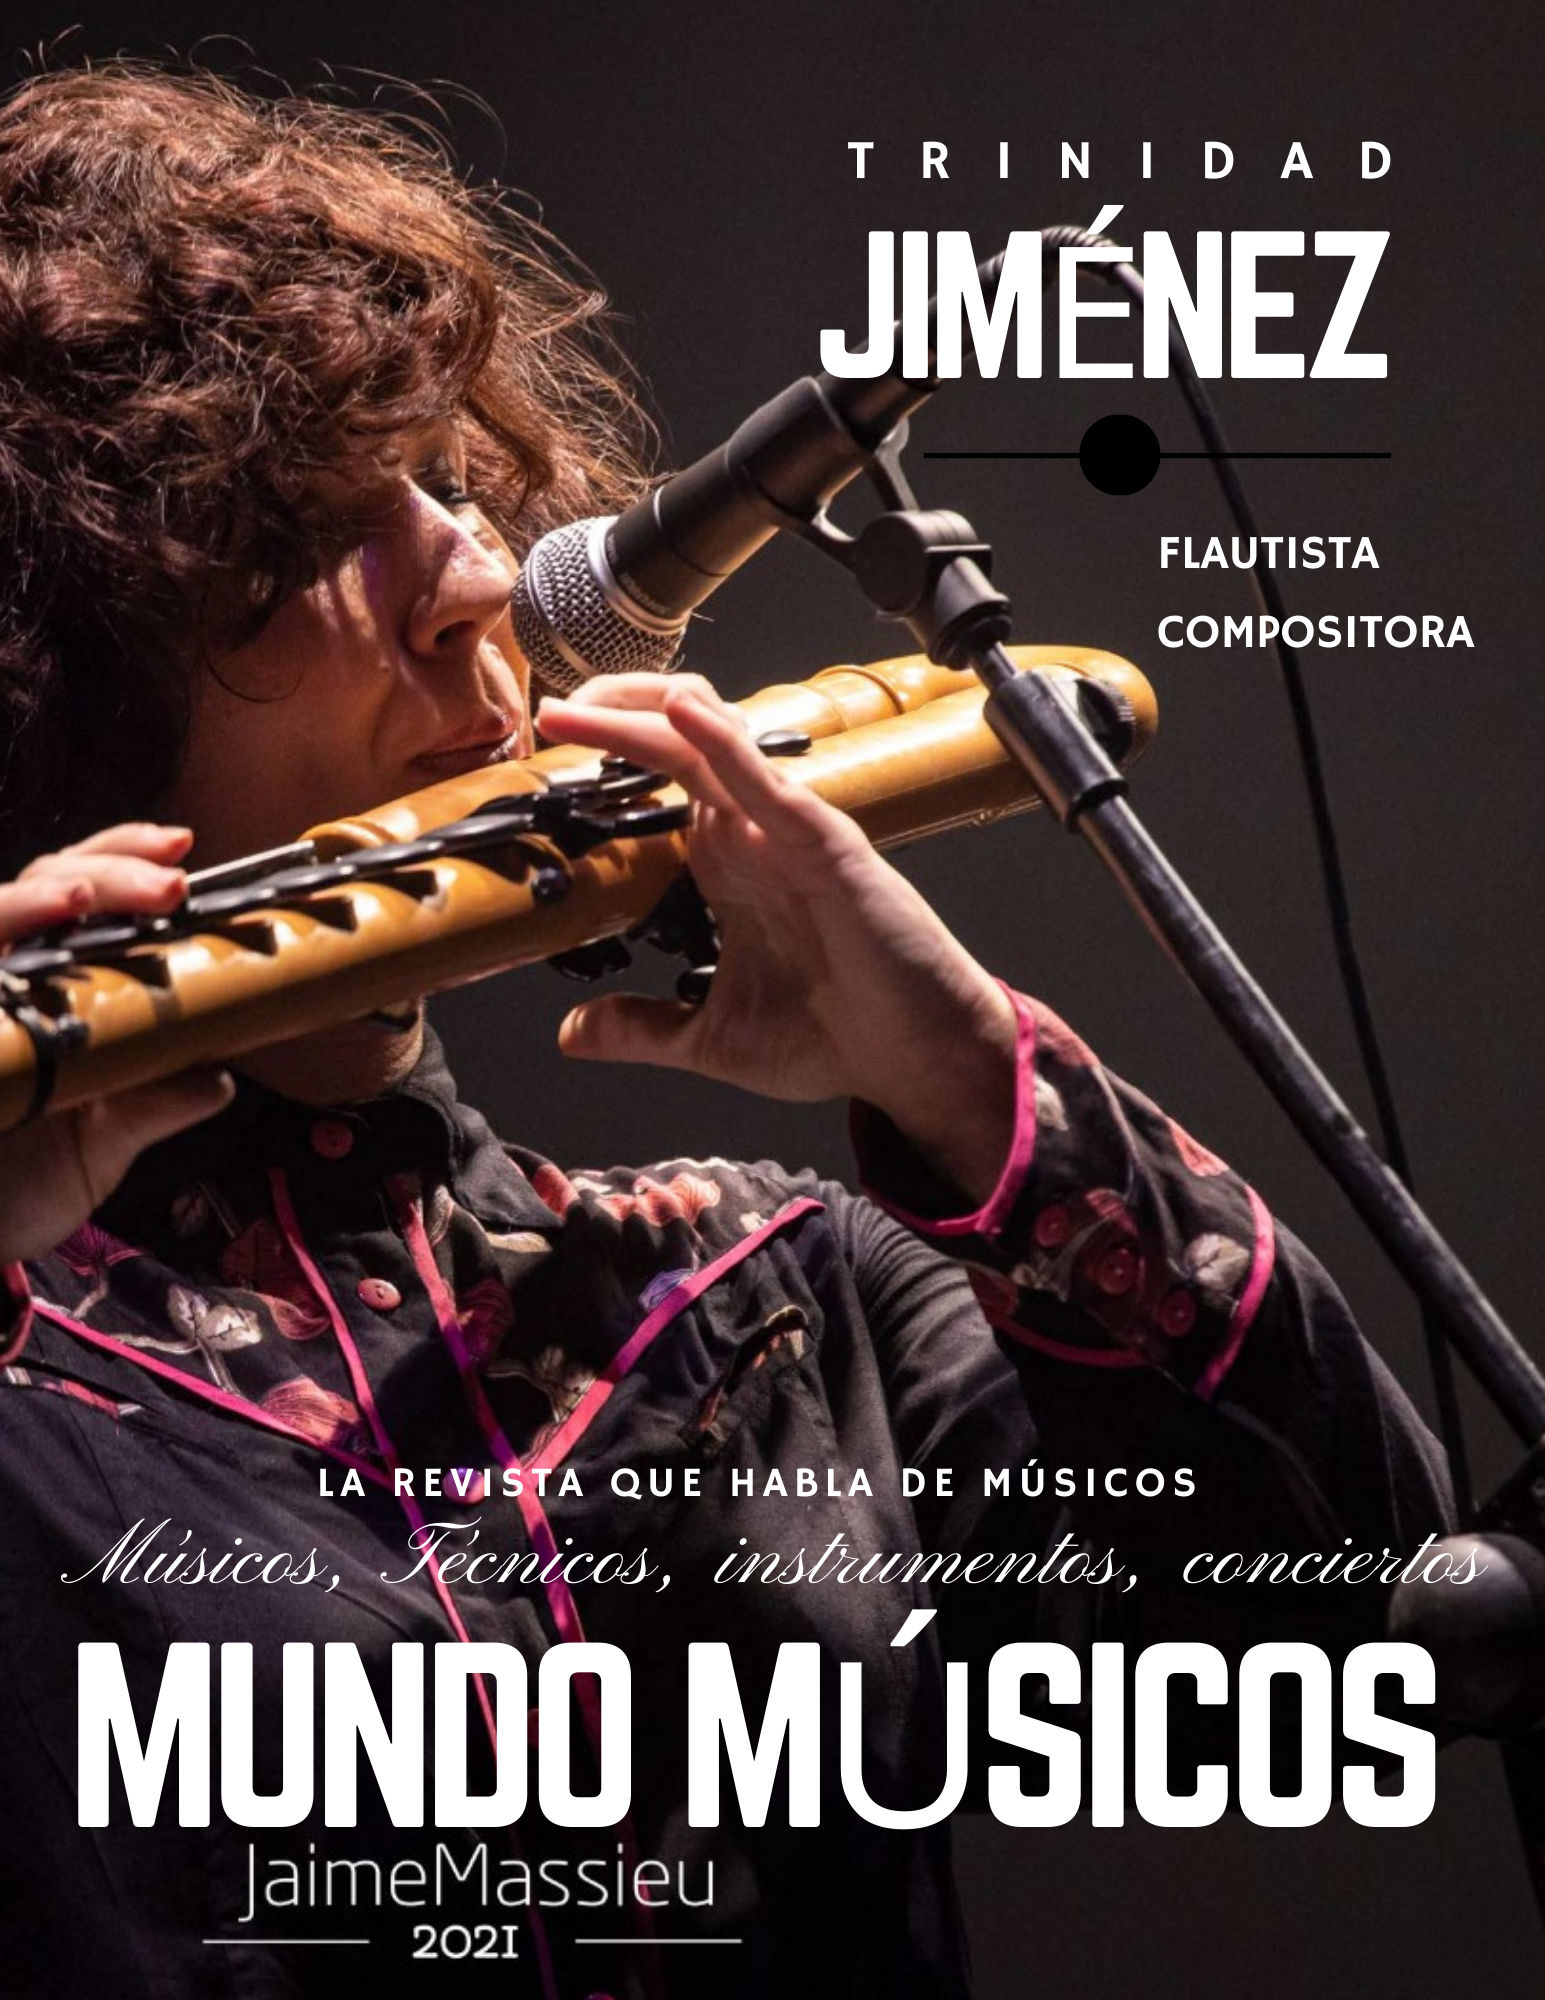 Trinidad Jiménez, flautista y compositora